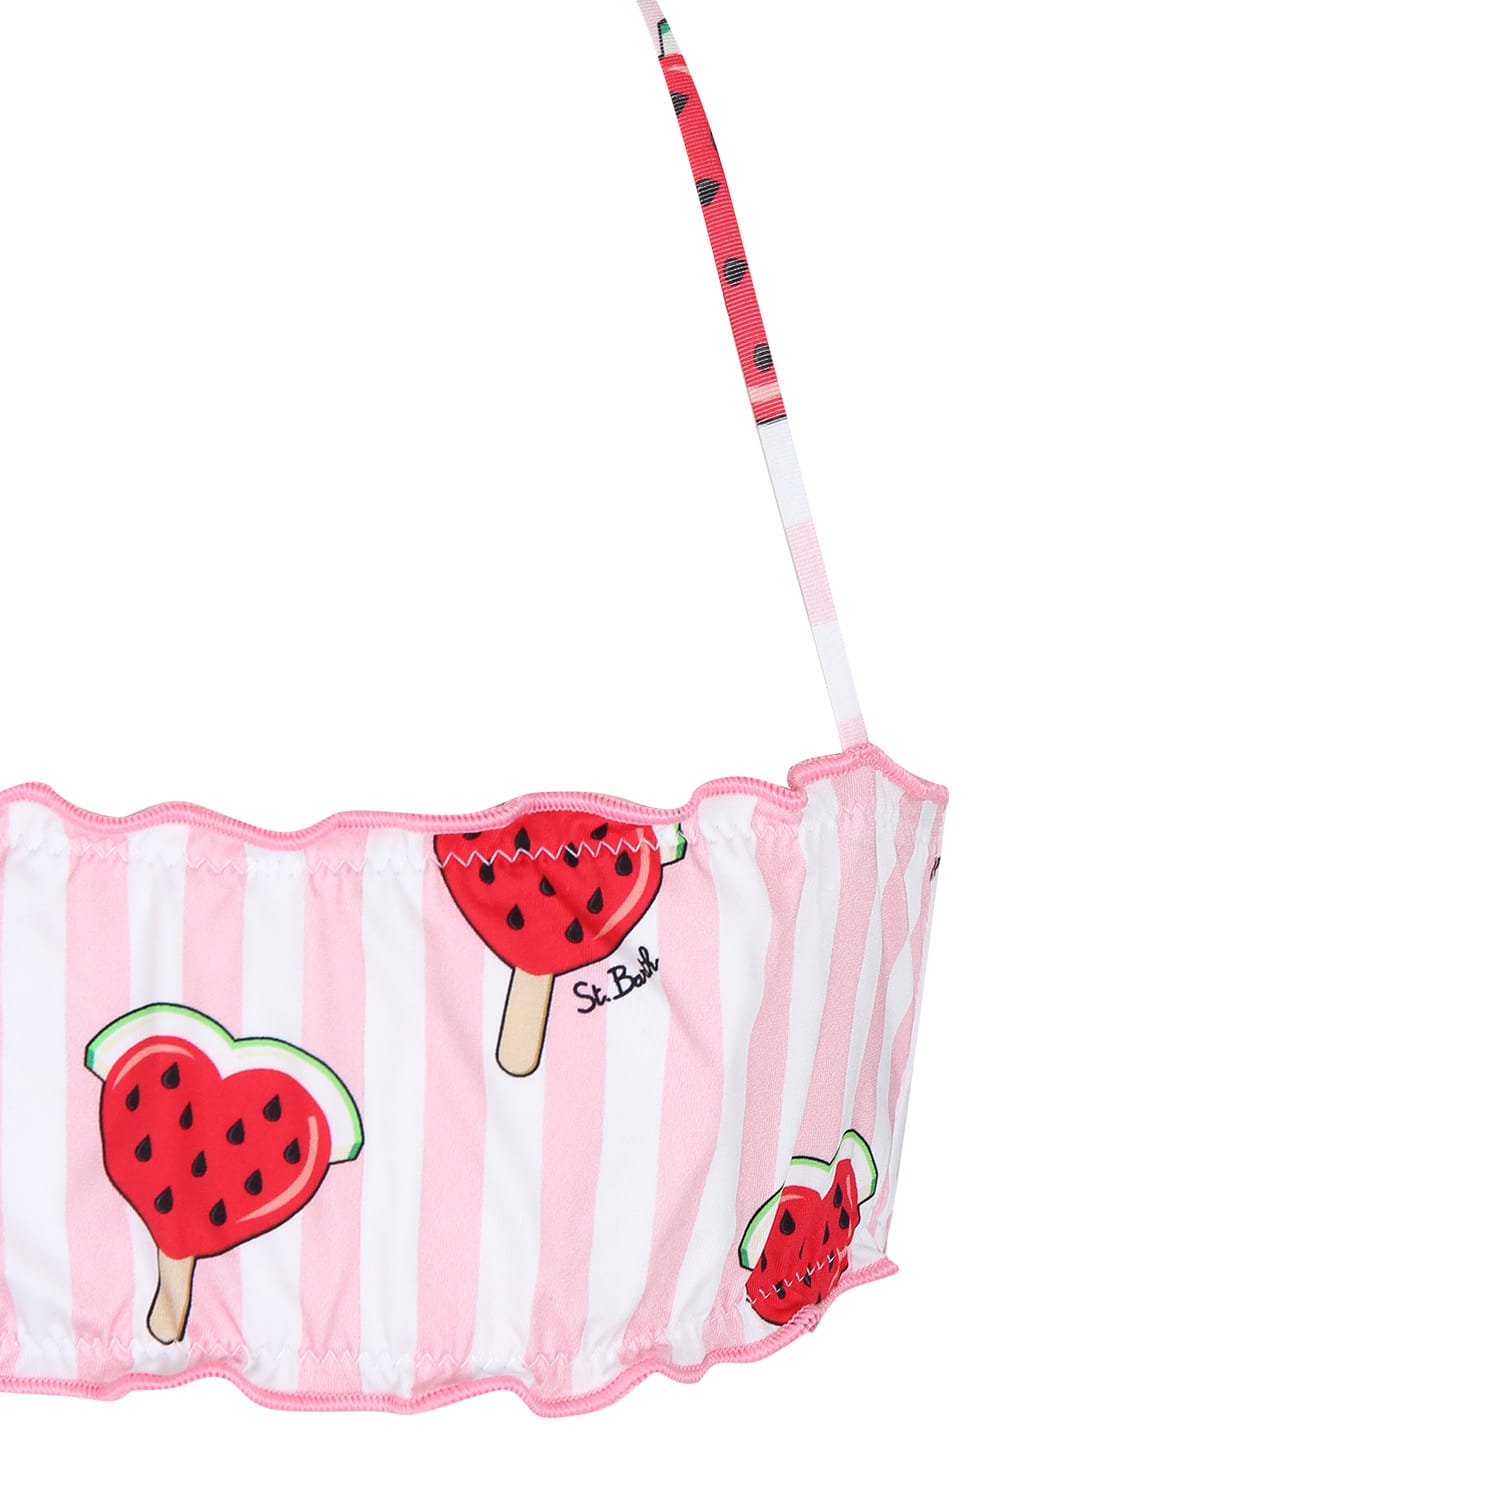 Shop Mc2 Saint Barth Pink Bikini For Girl With Strawberries And Hearts